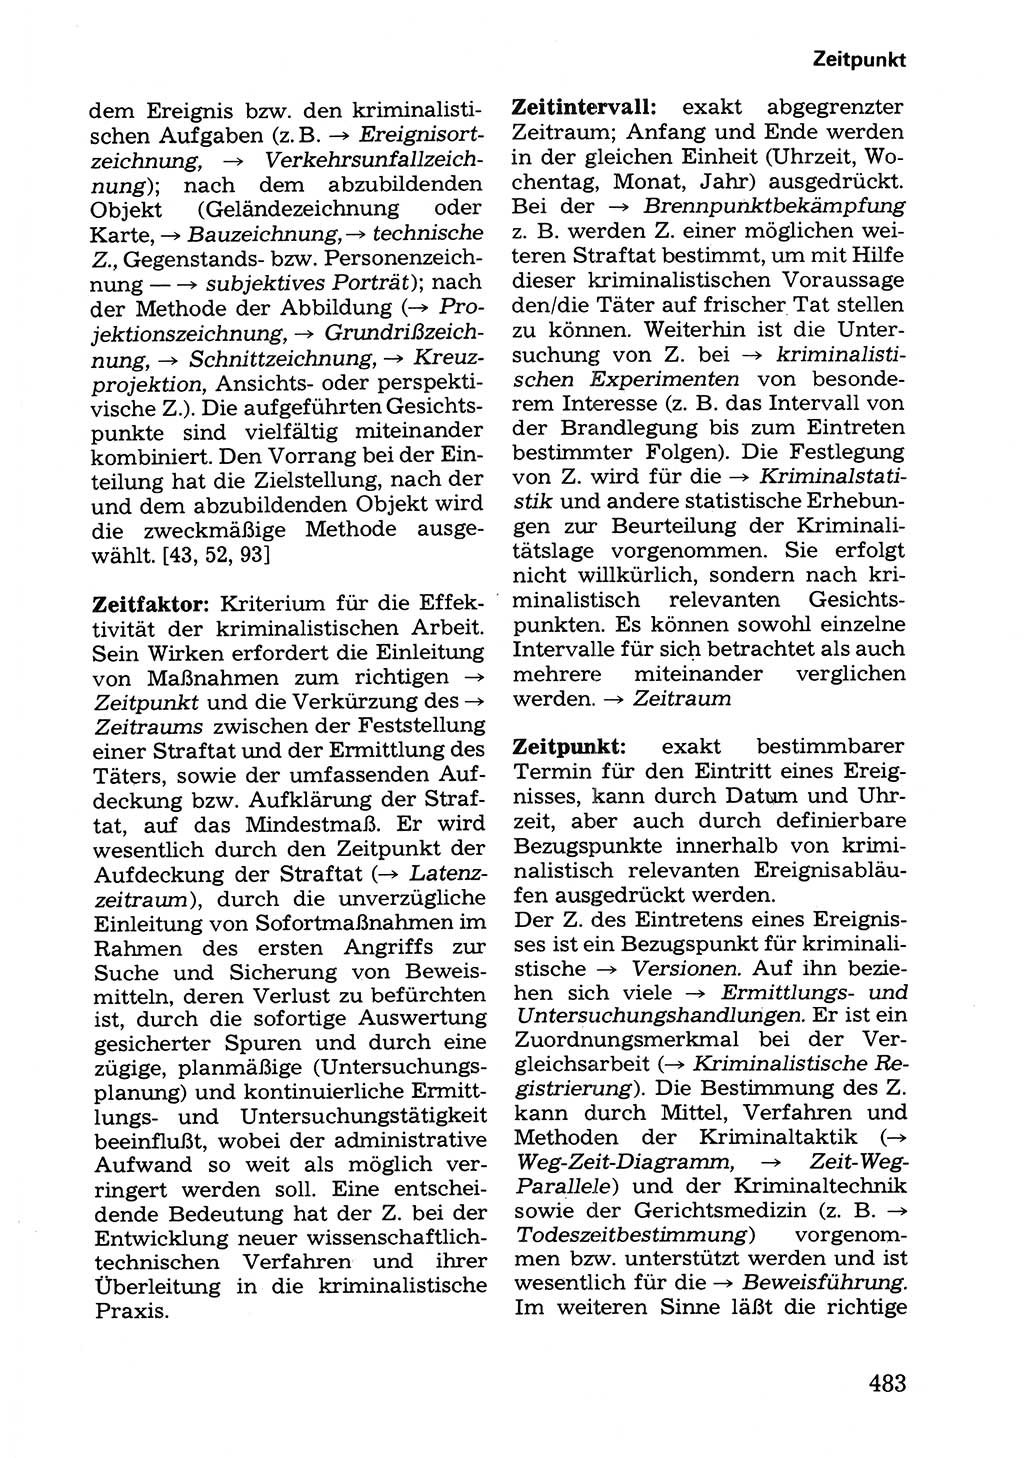 Wörterbuch der sozialistischen Kriminalistik [Deutsche Demokratische Republik (DDR)] 1981, Seite 483 (Wb. soz. Krim. DDR 1981, S. 483)